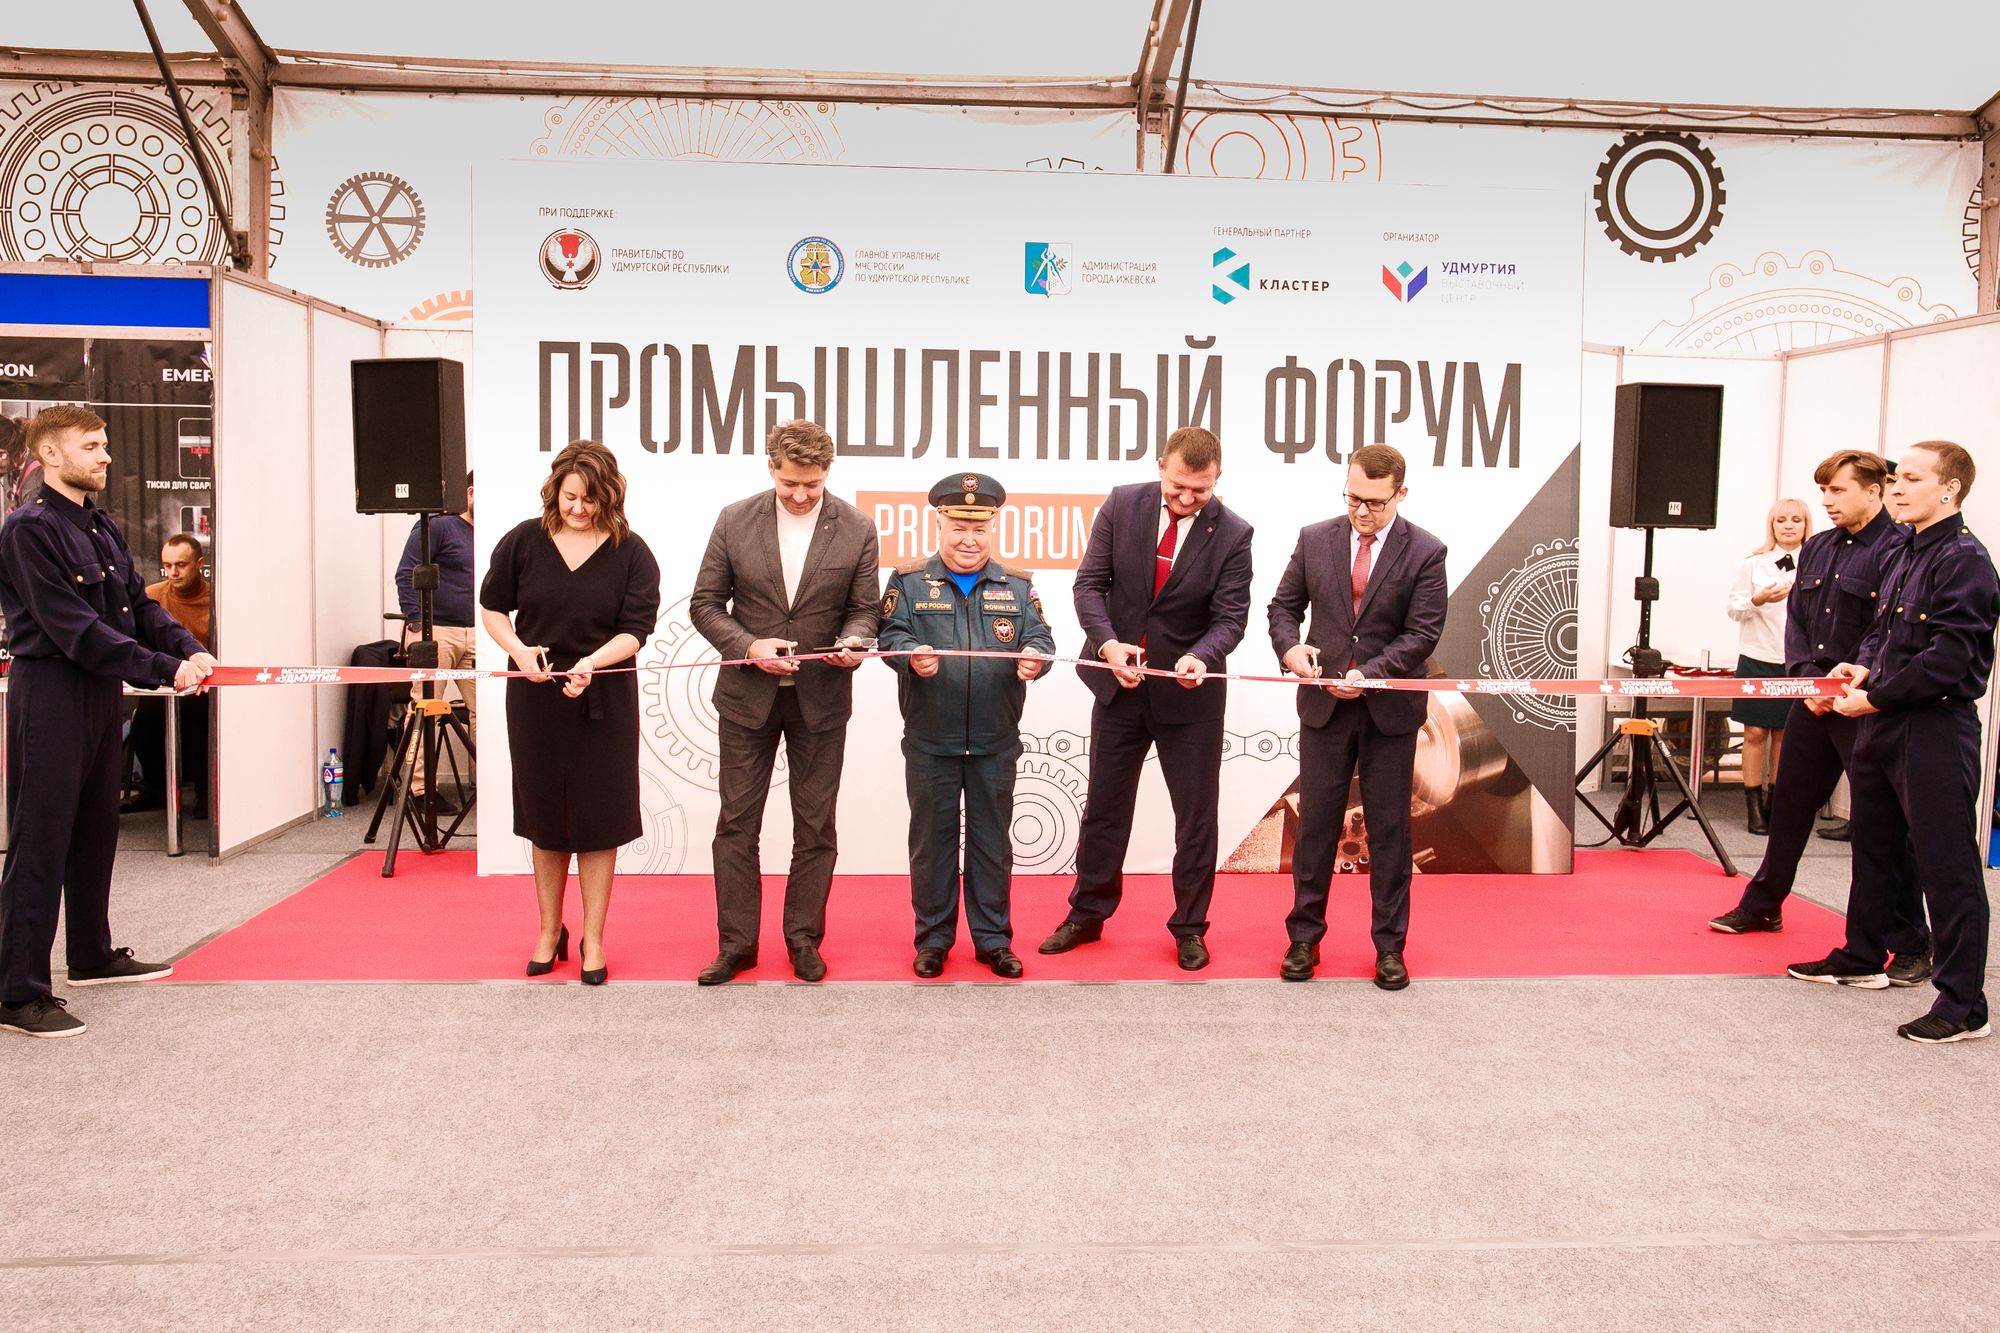 Смотр новейших технологий: в Ижевске стартовал Промышленный форум